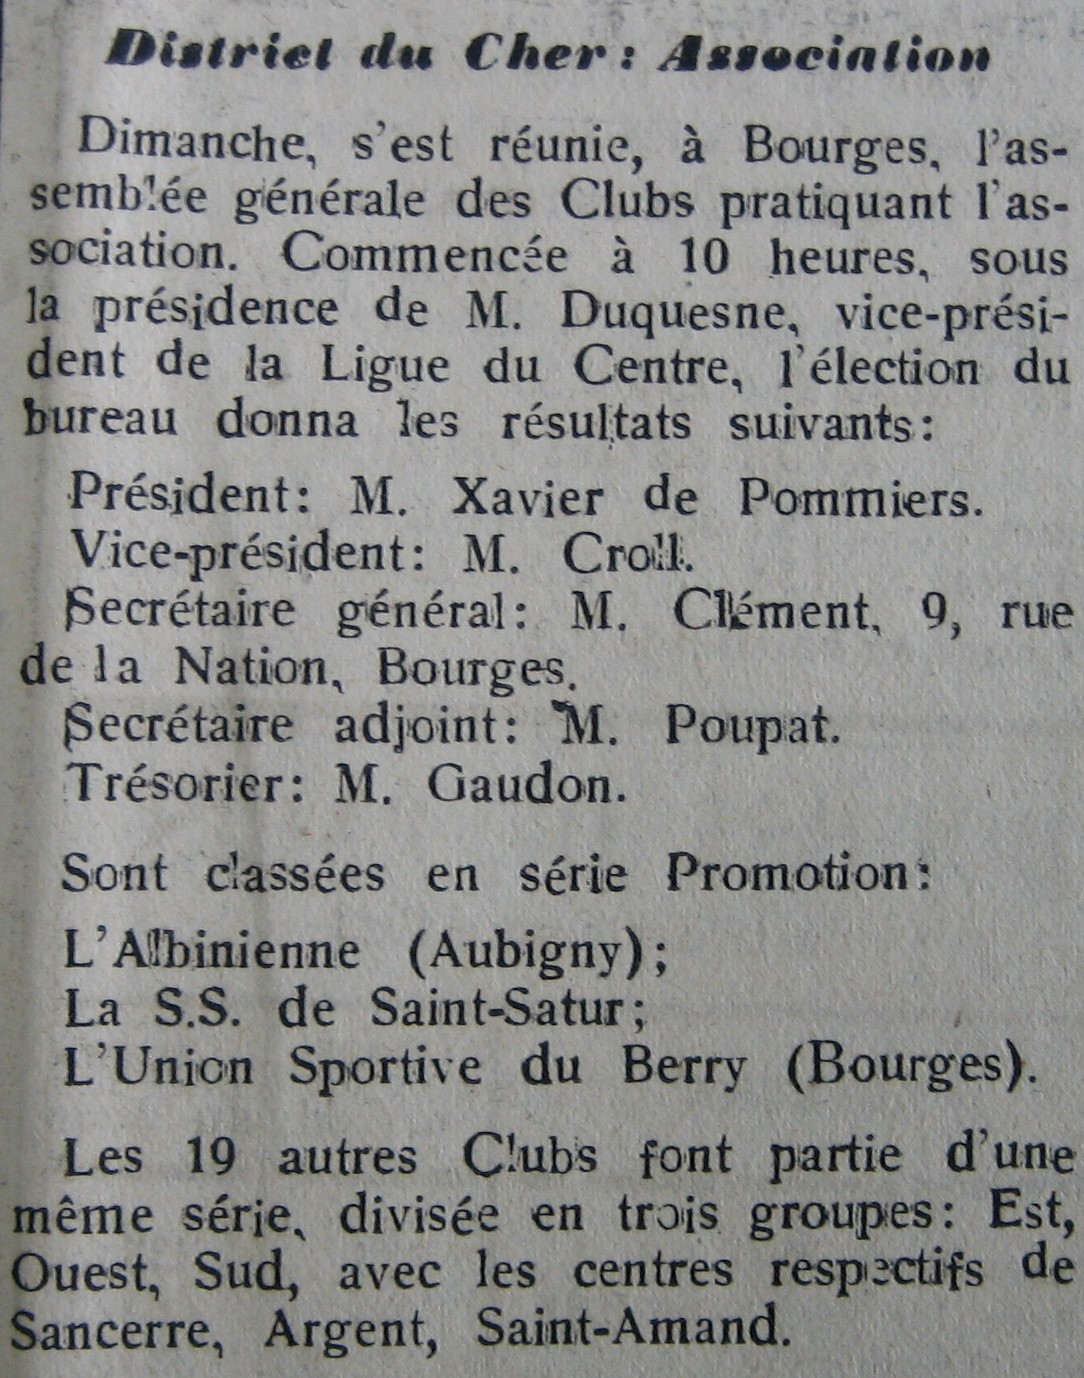 Nouveau bureau du Disrict du Cher de Football 1923-24